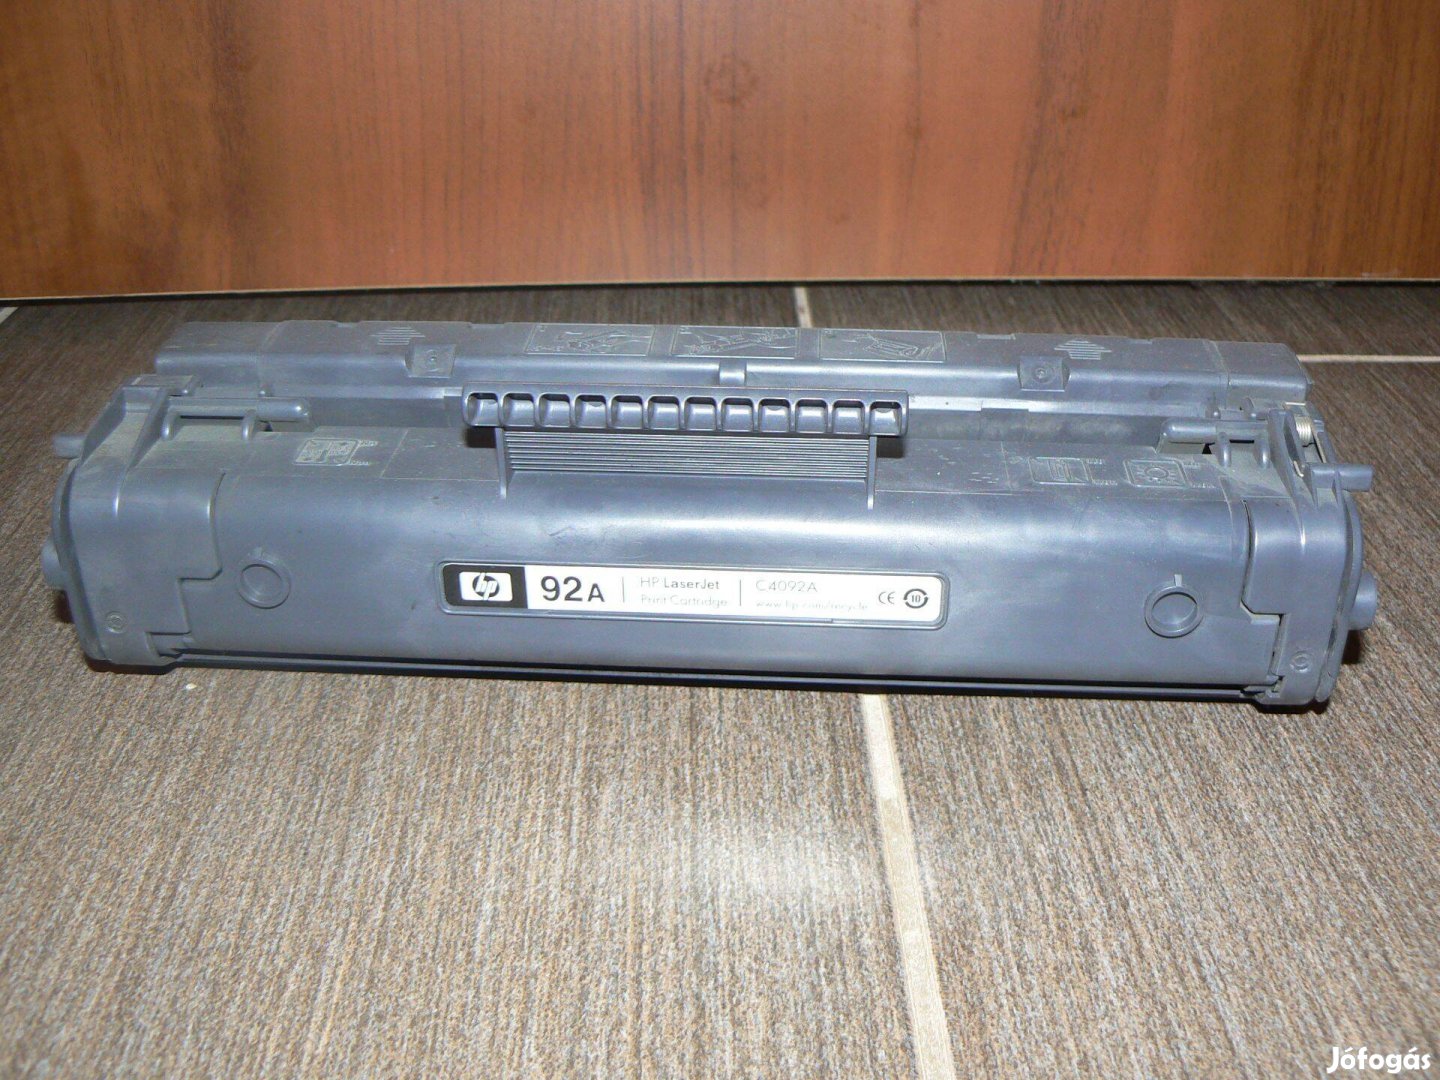 Töltött HP Laserjet C4092A lézernyomtató toner